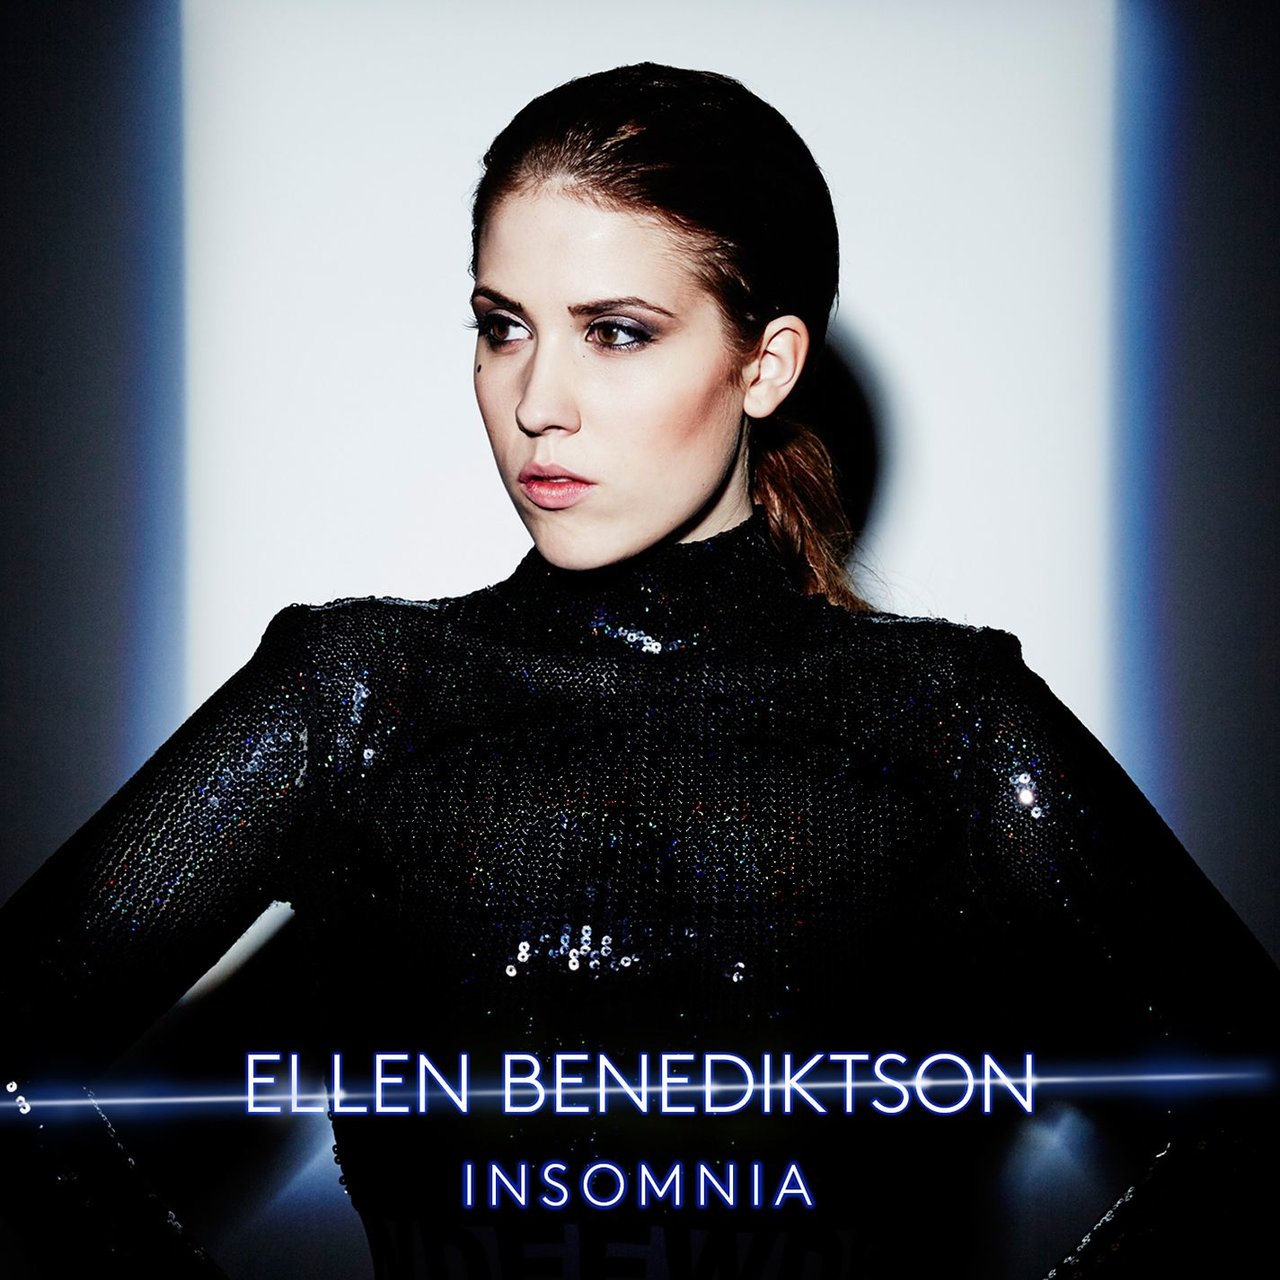 Ellen Benediktson Insomnia cover artwork